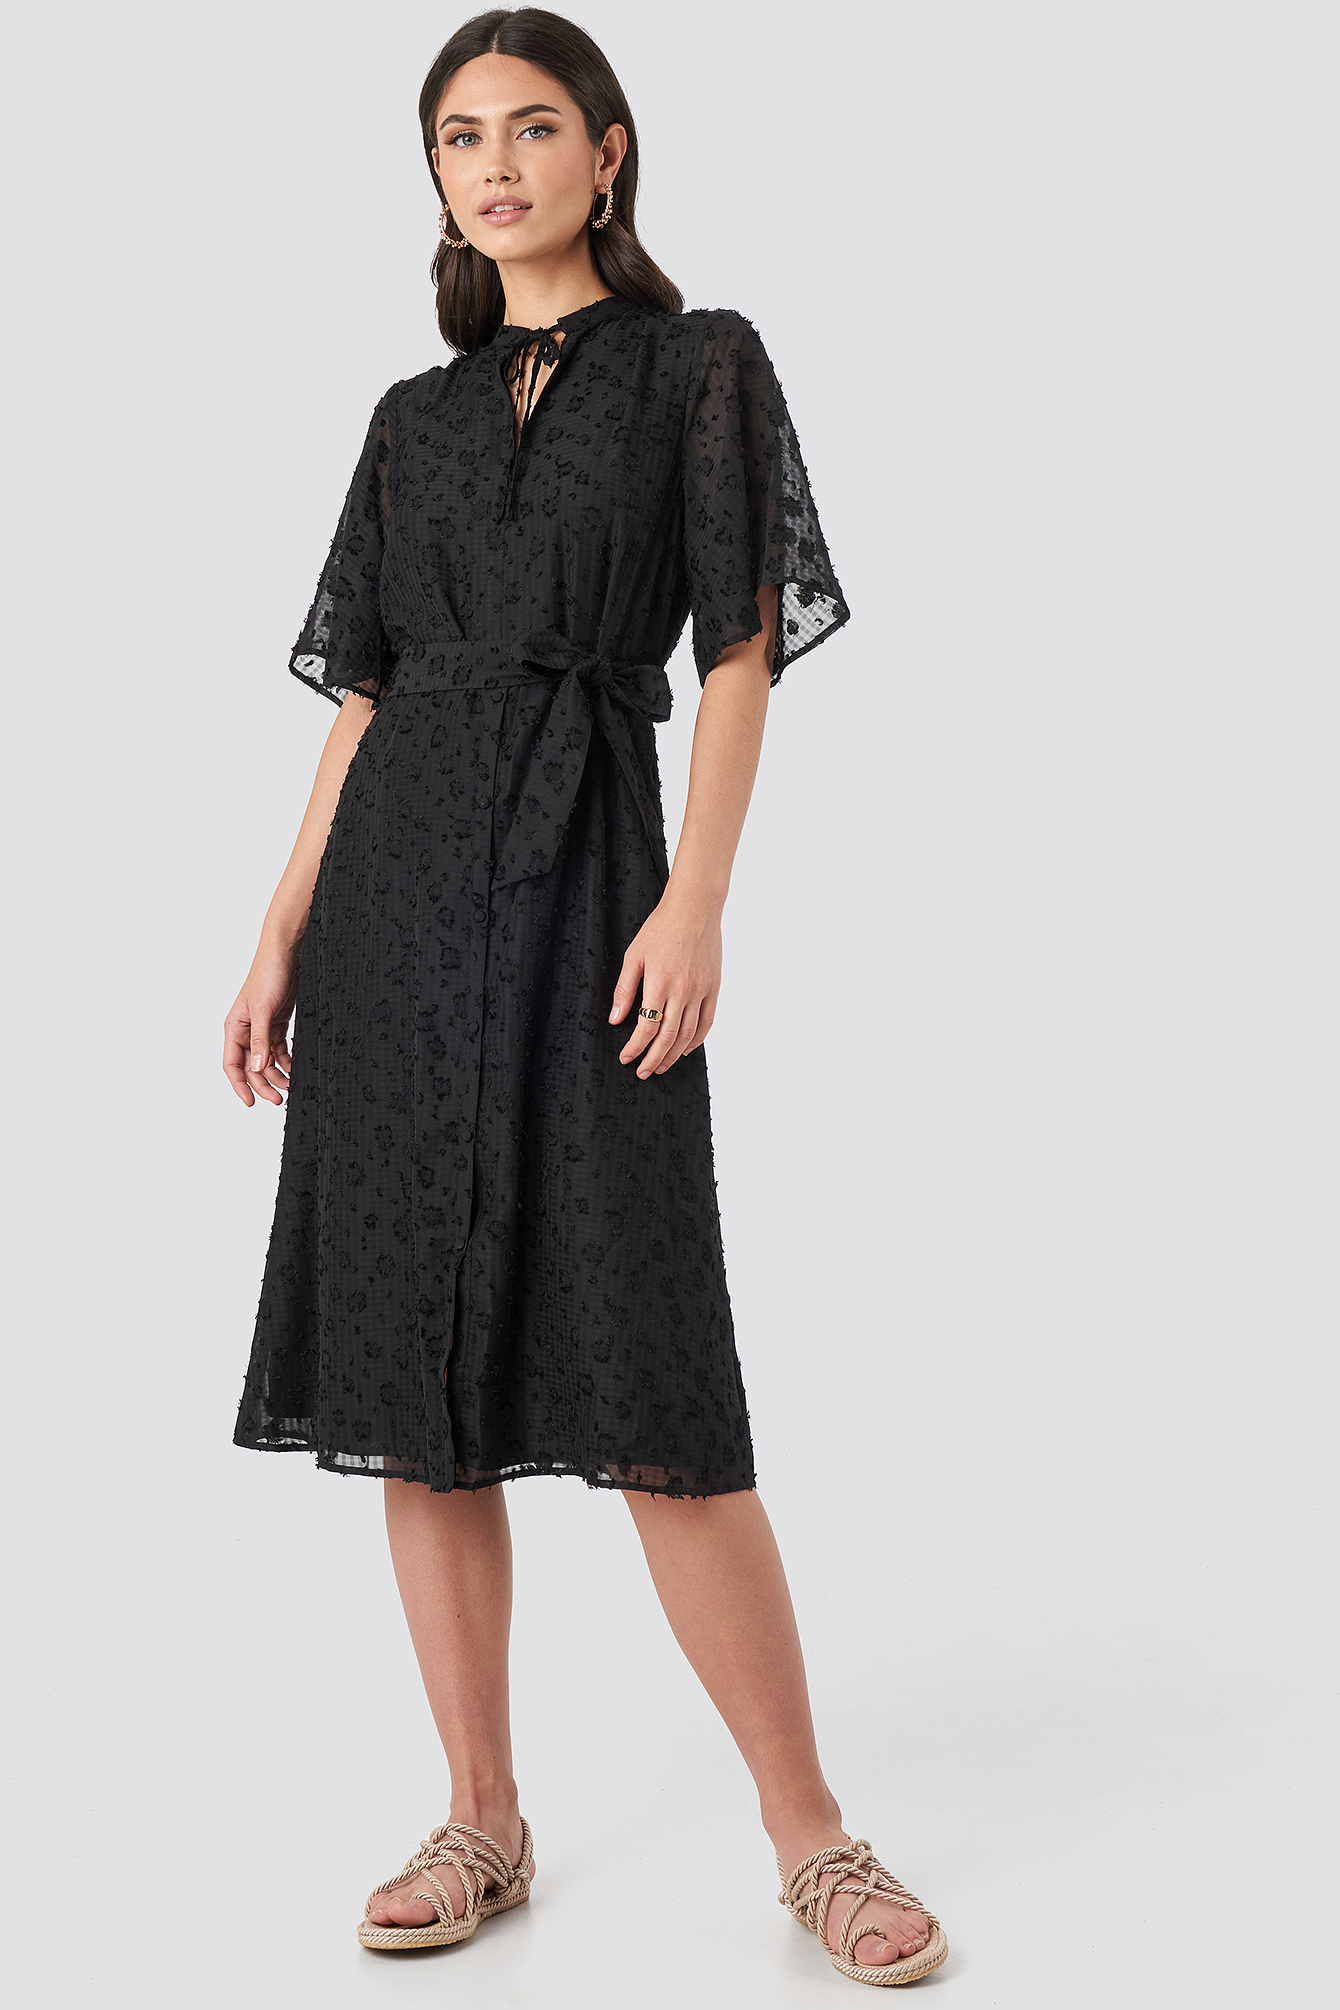 Black Sukienka Odsłaniająca Plecy, Wyraźny Fason